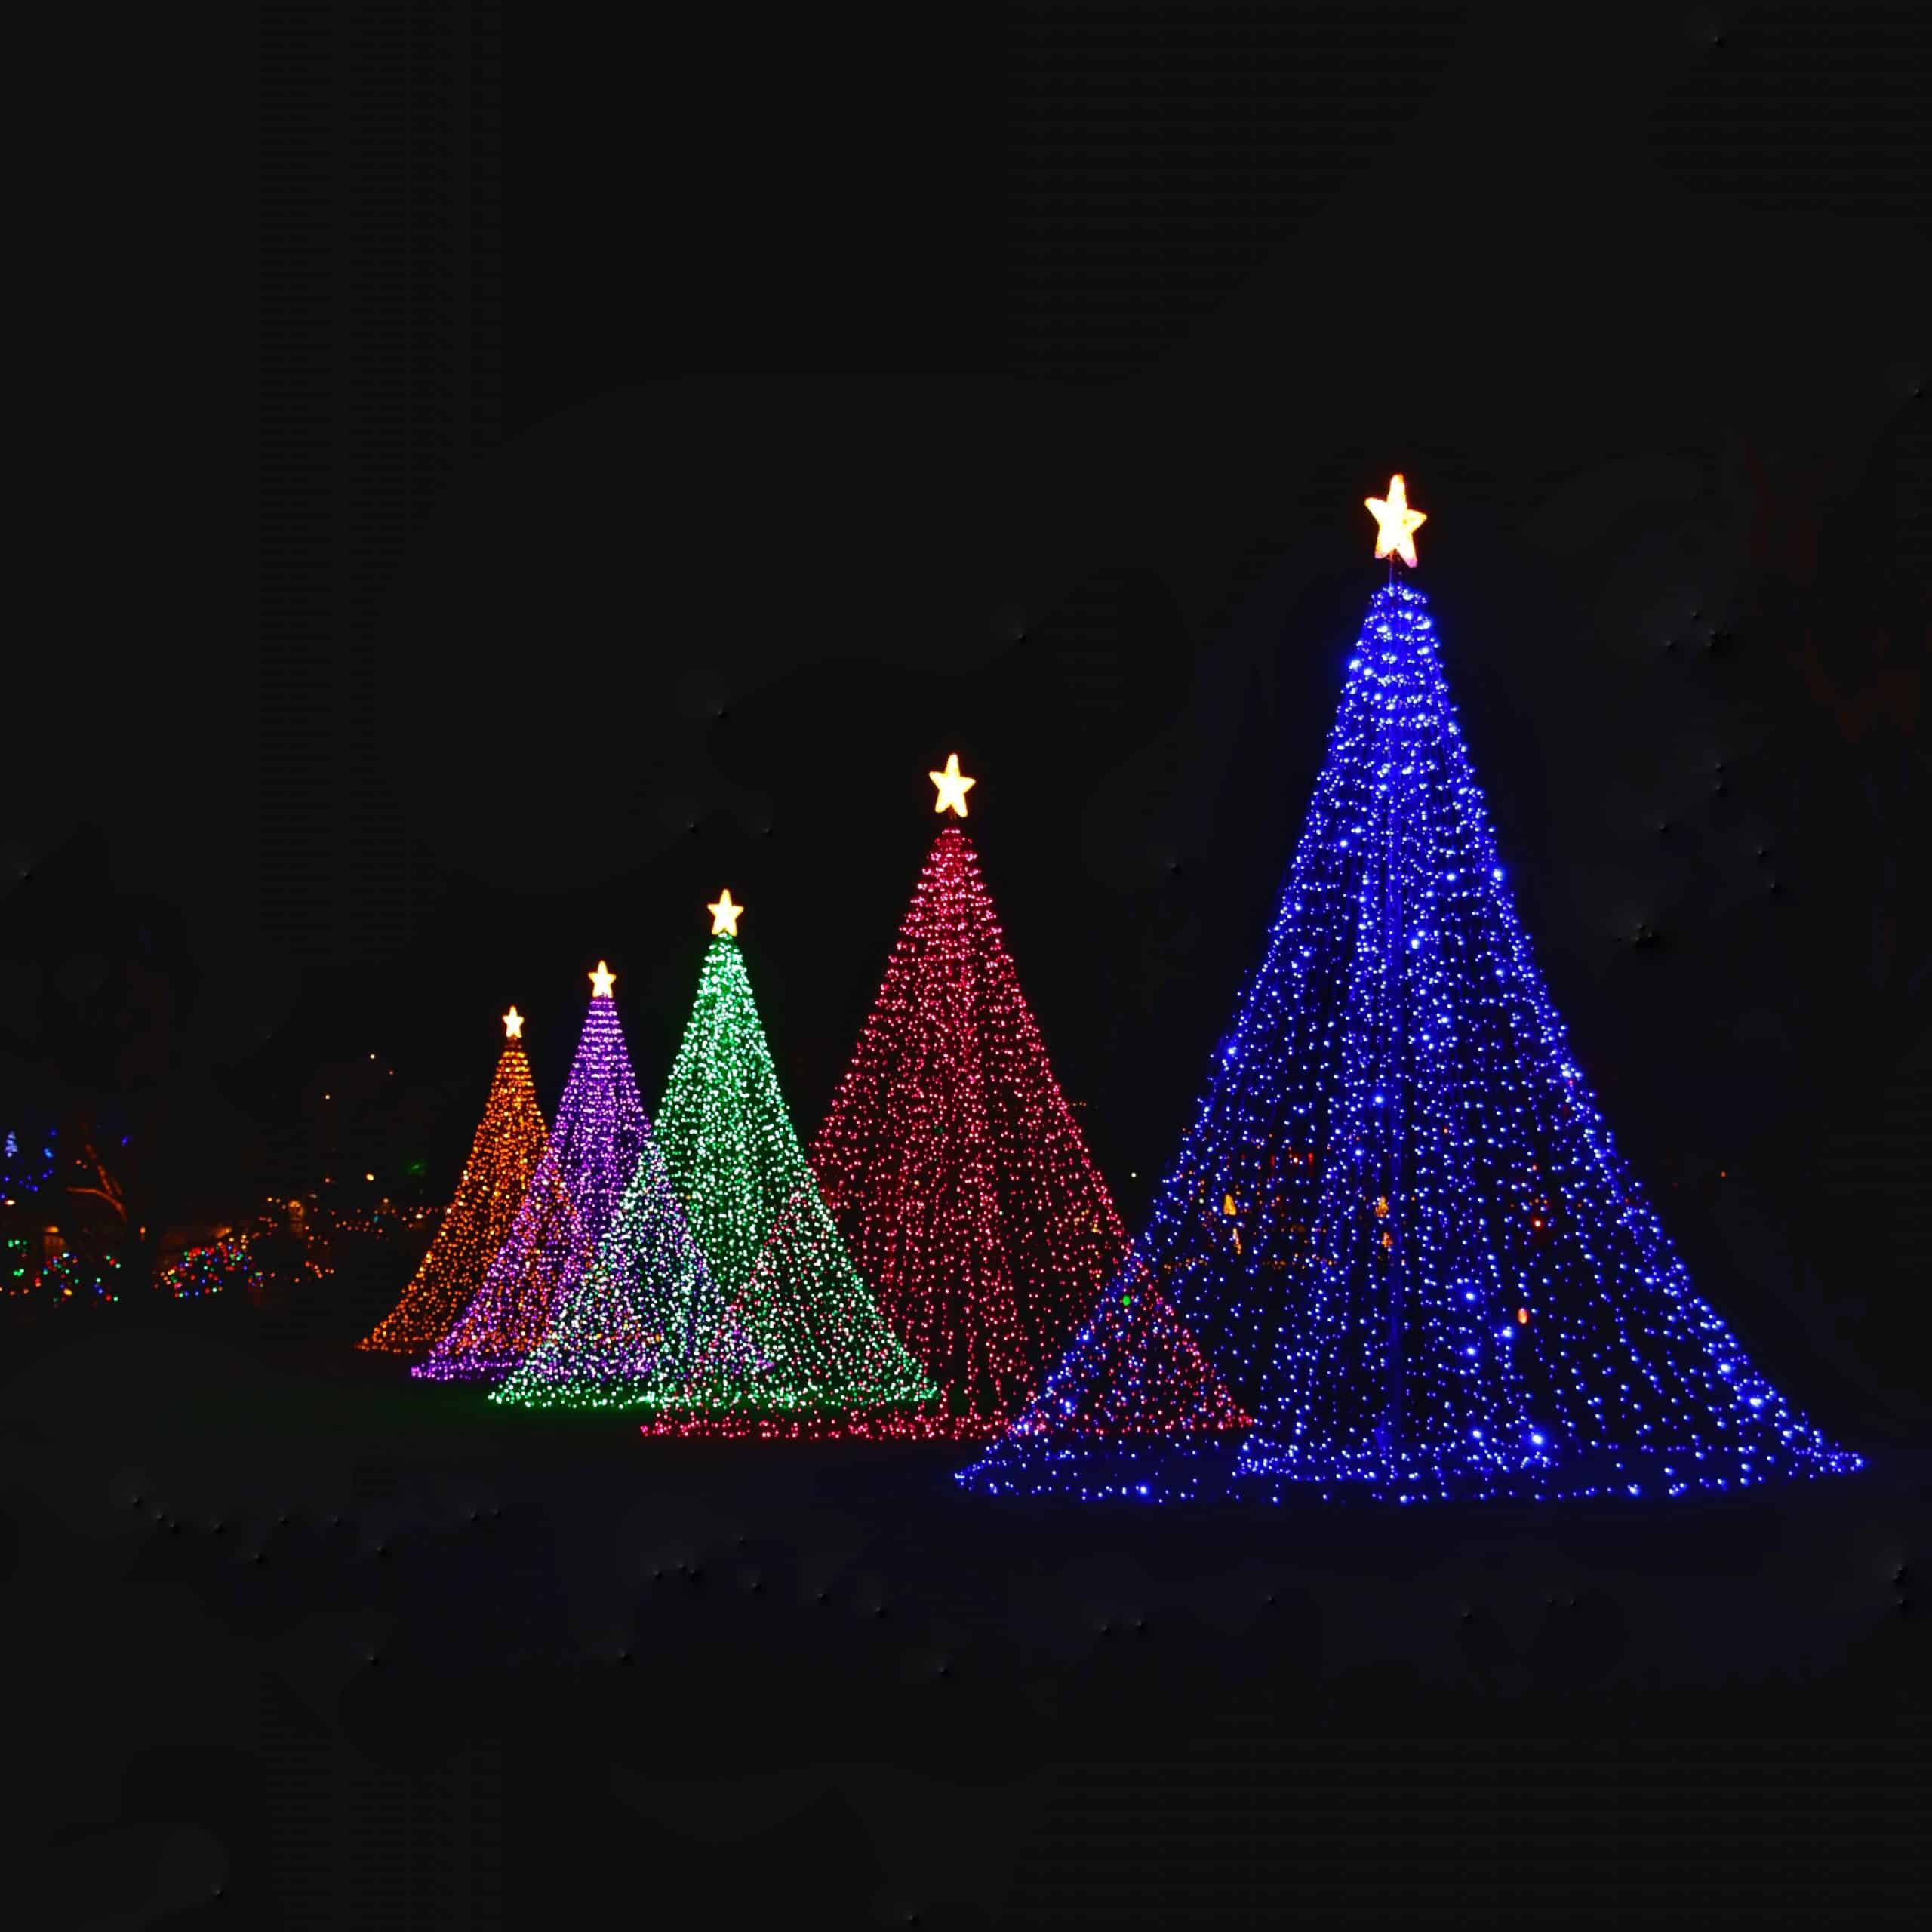 Photo of a Christmas lights display